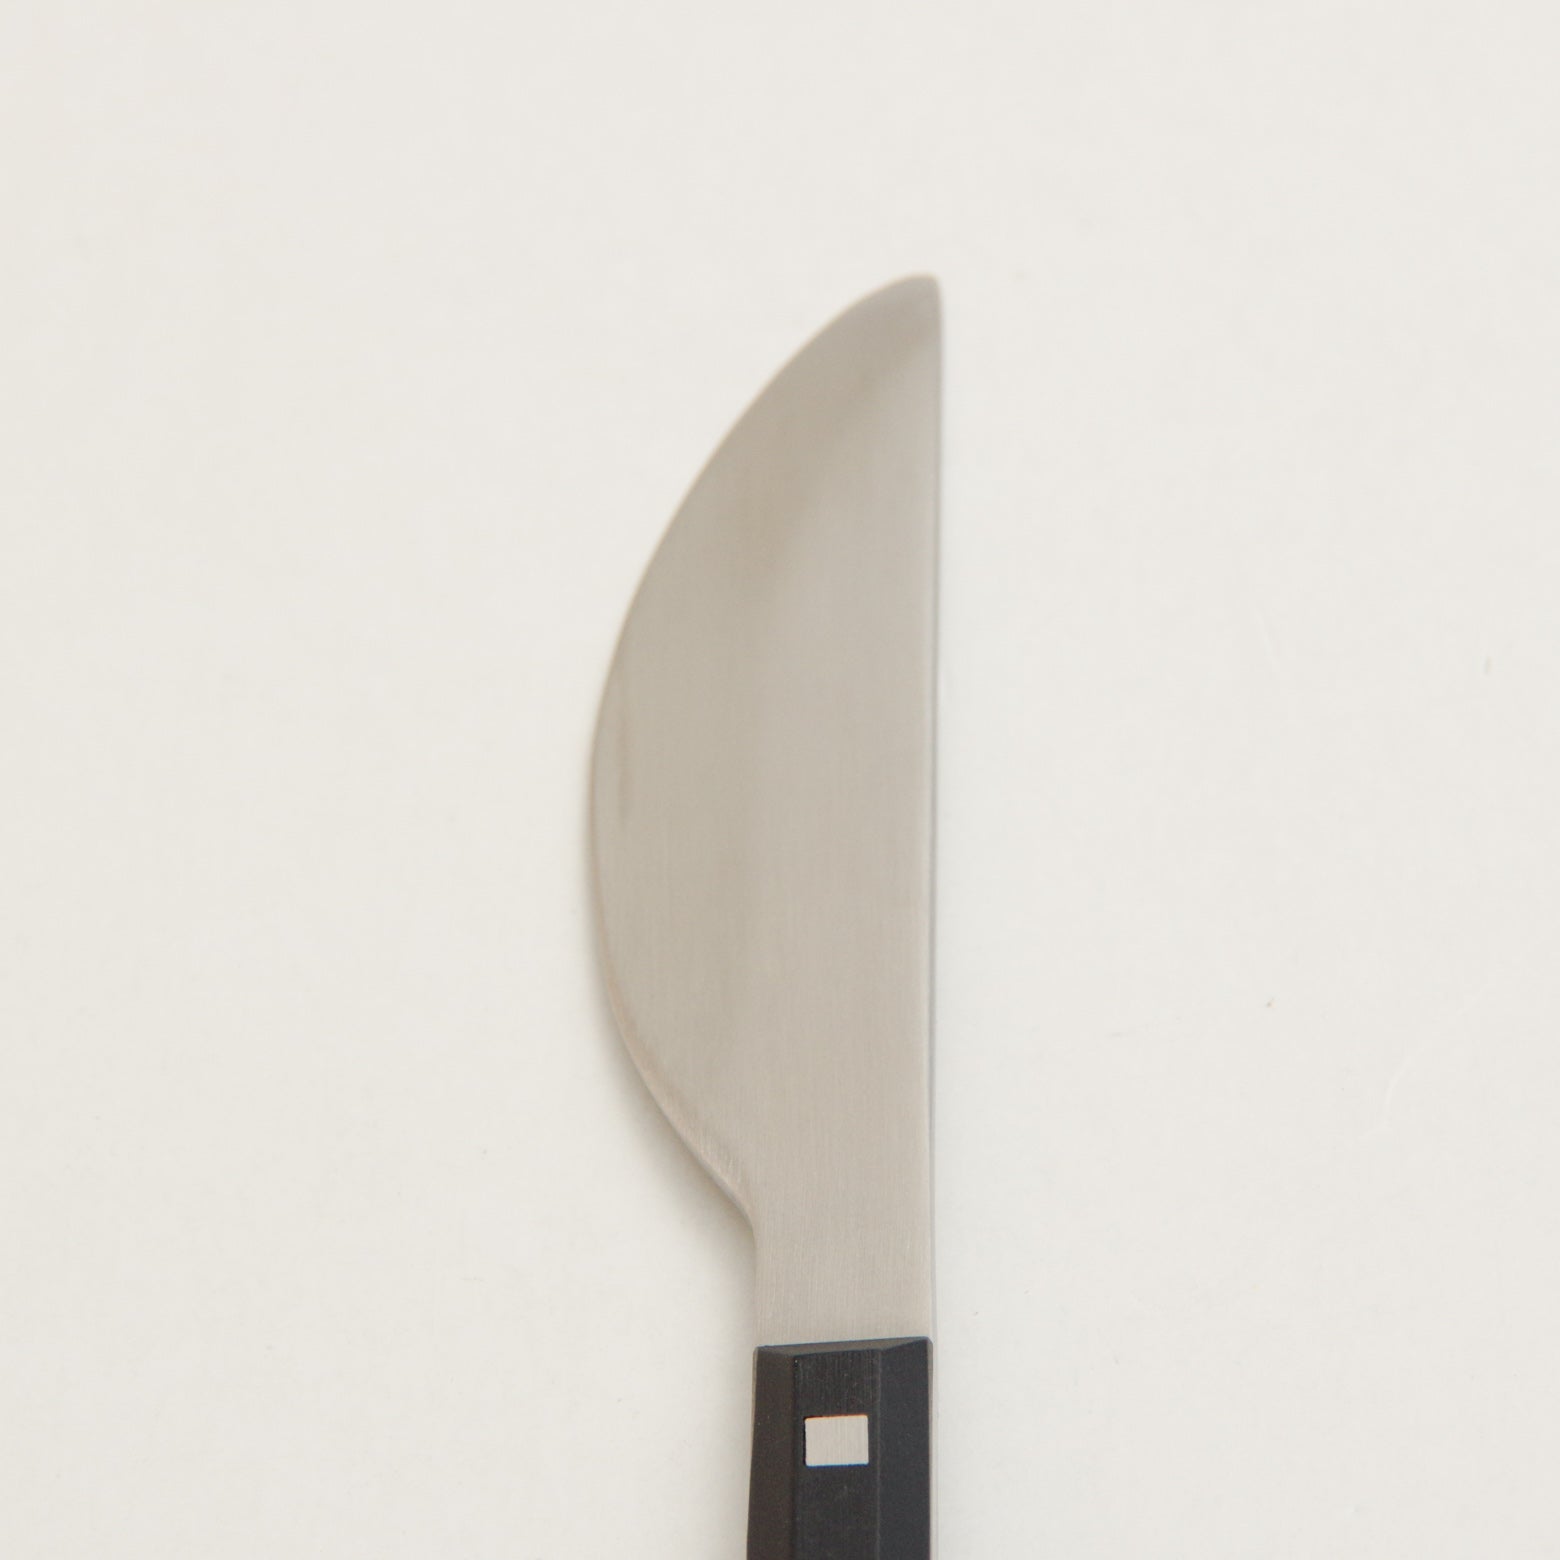 カトラリー KAKU バターナイフ 15.5cm